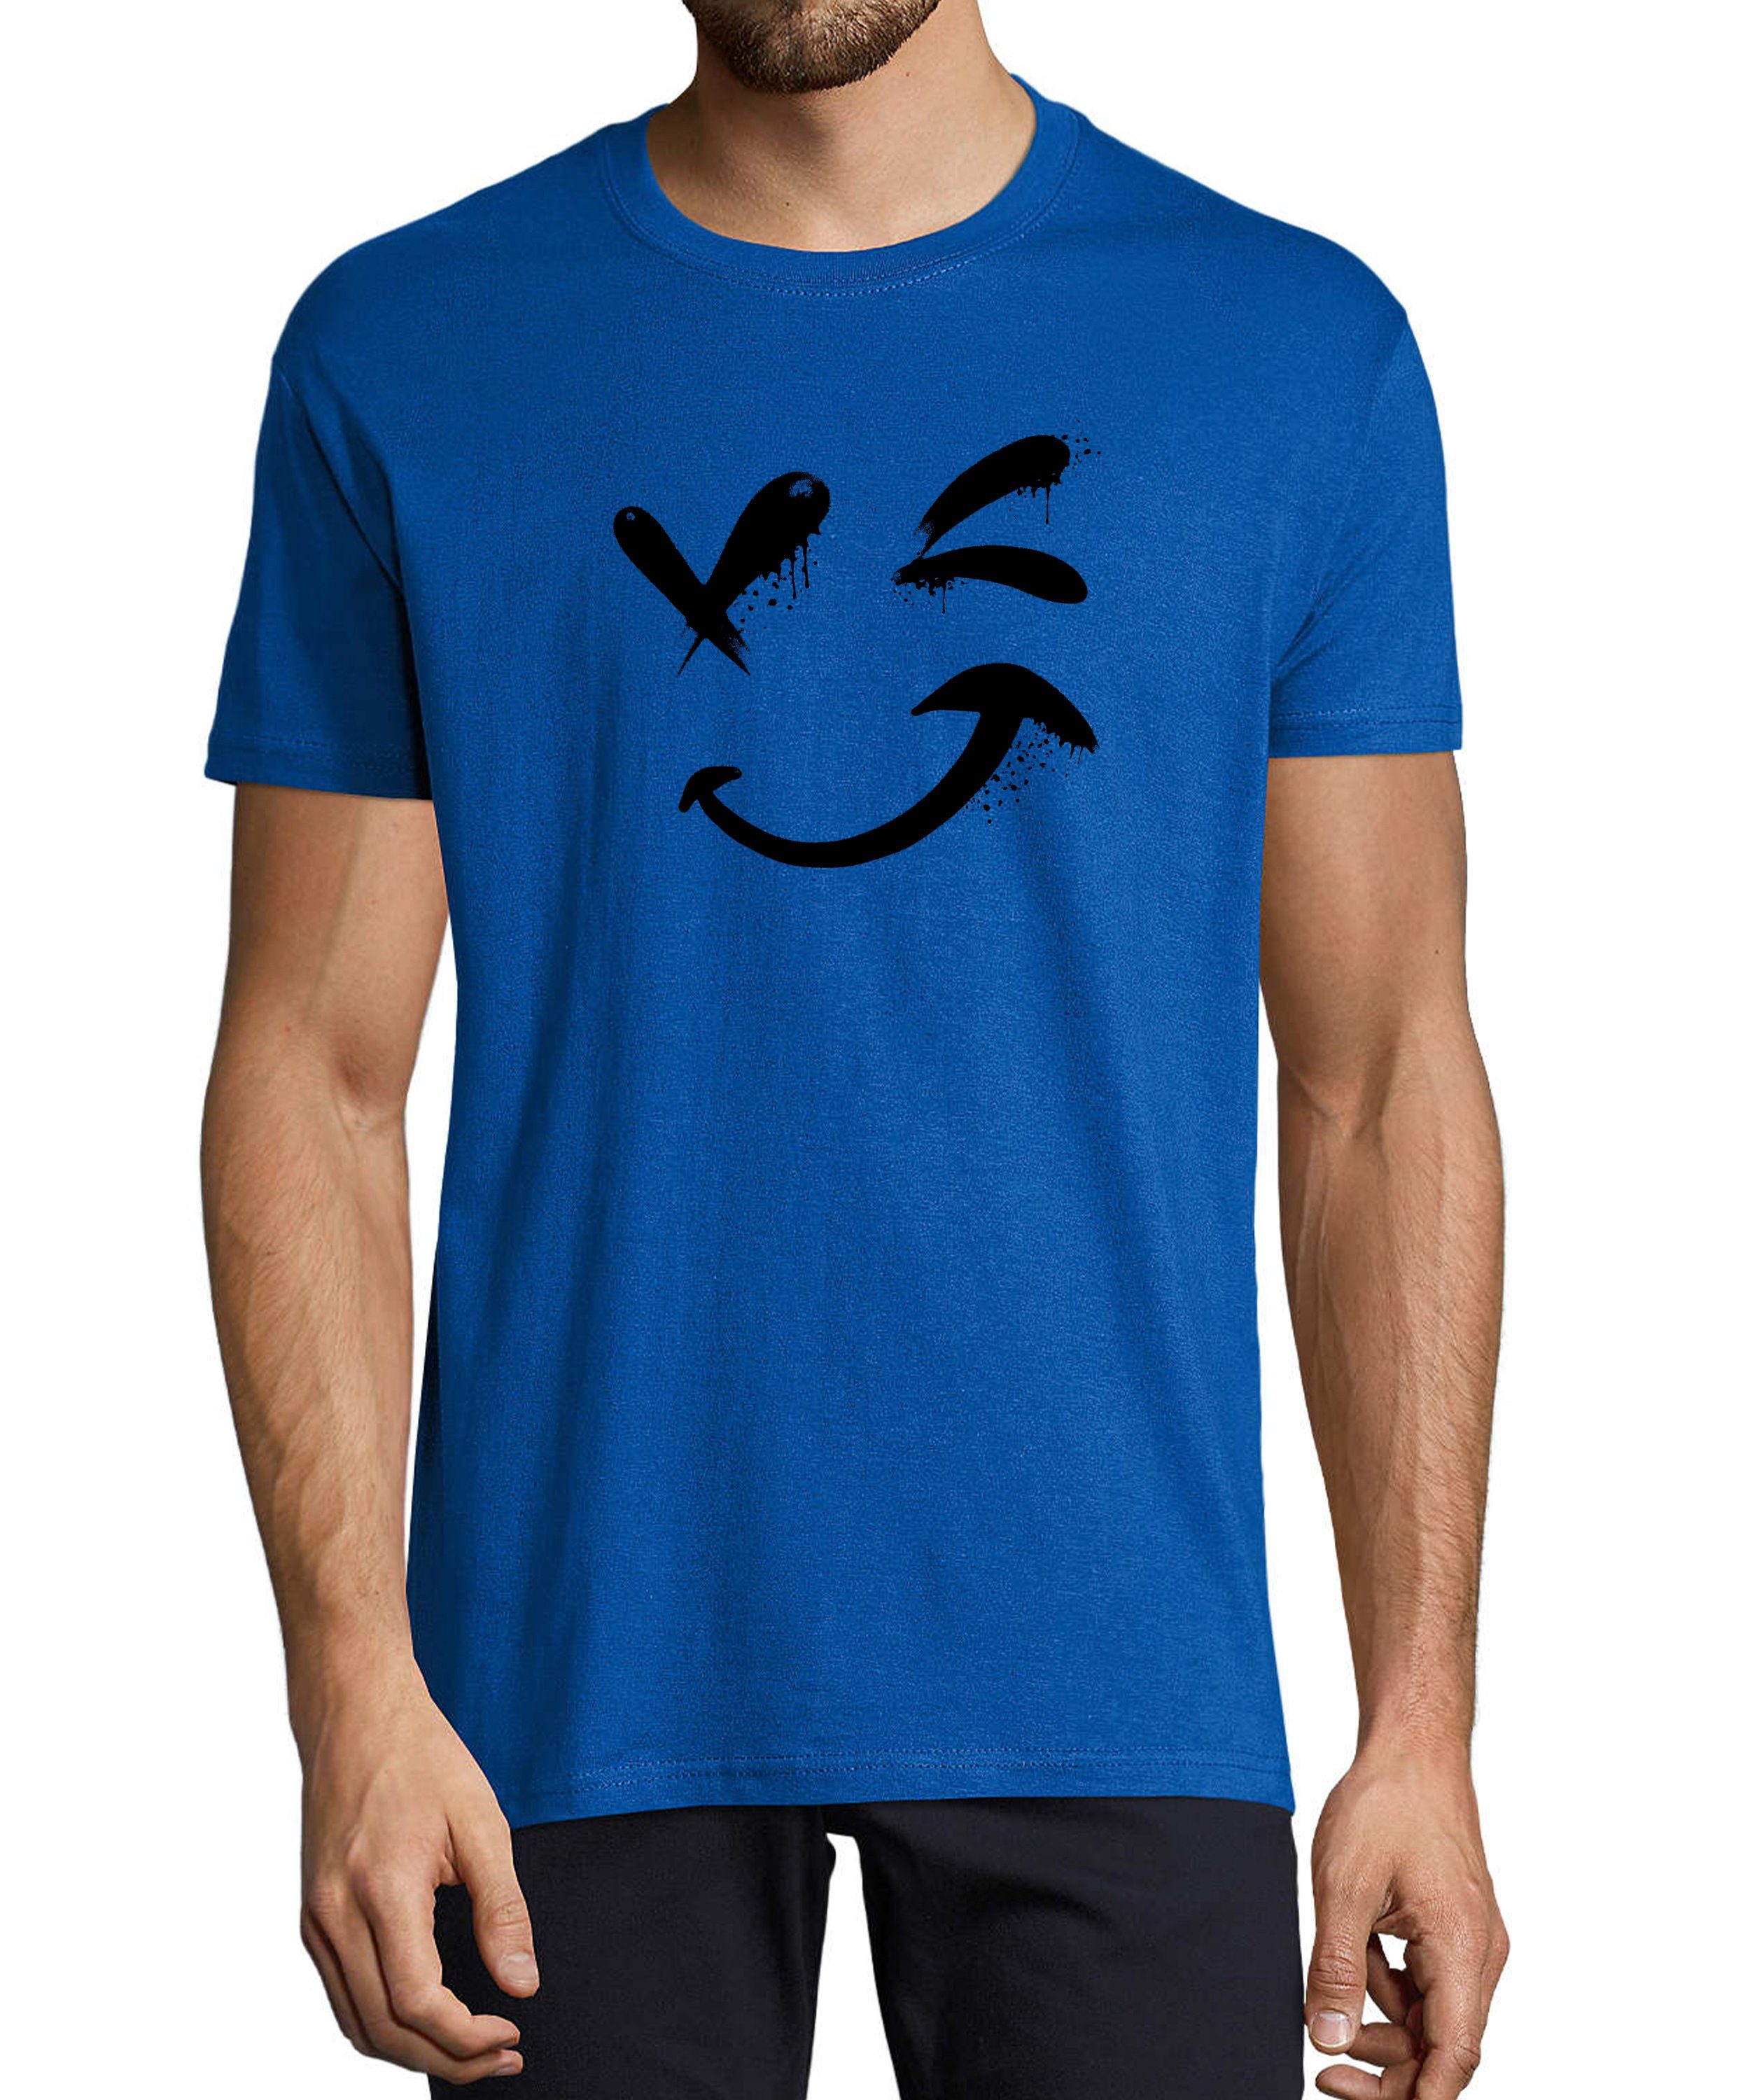 MyDesign24 Baumwollshirt Aufdruck Zwinkernder - Shirt blau Regular T-Shirt Herren mit Fit, i294 Print royal Smiley Smiley